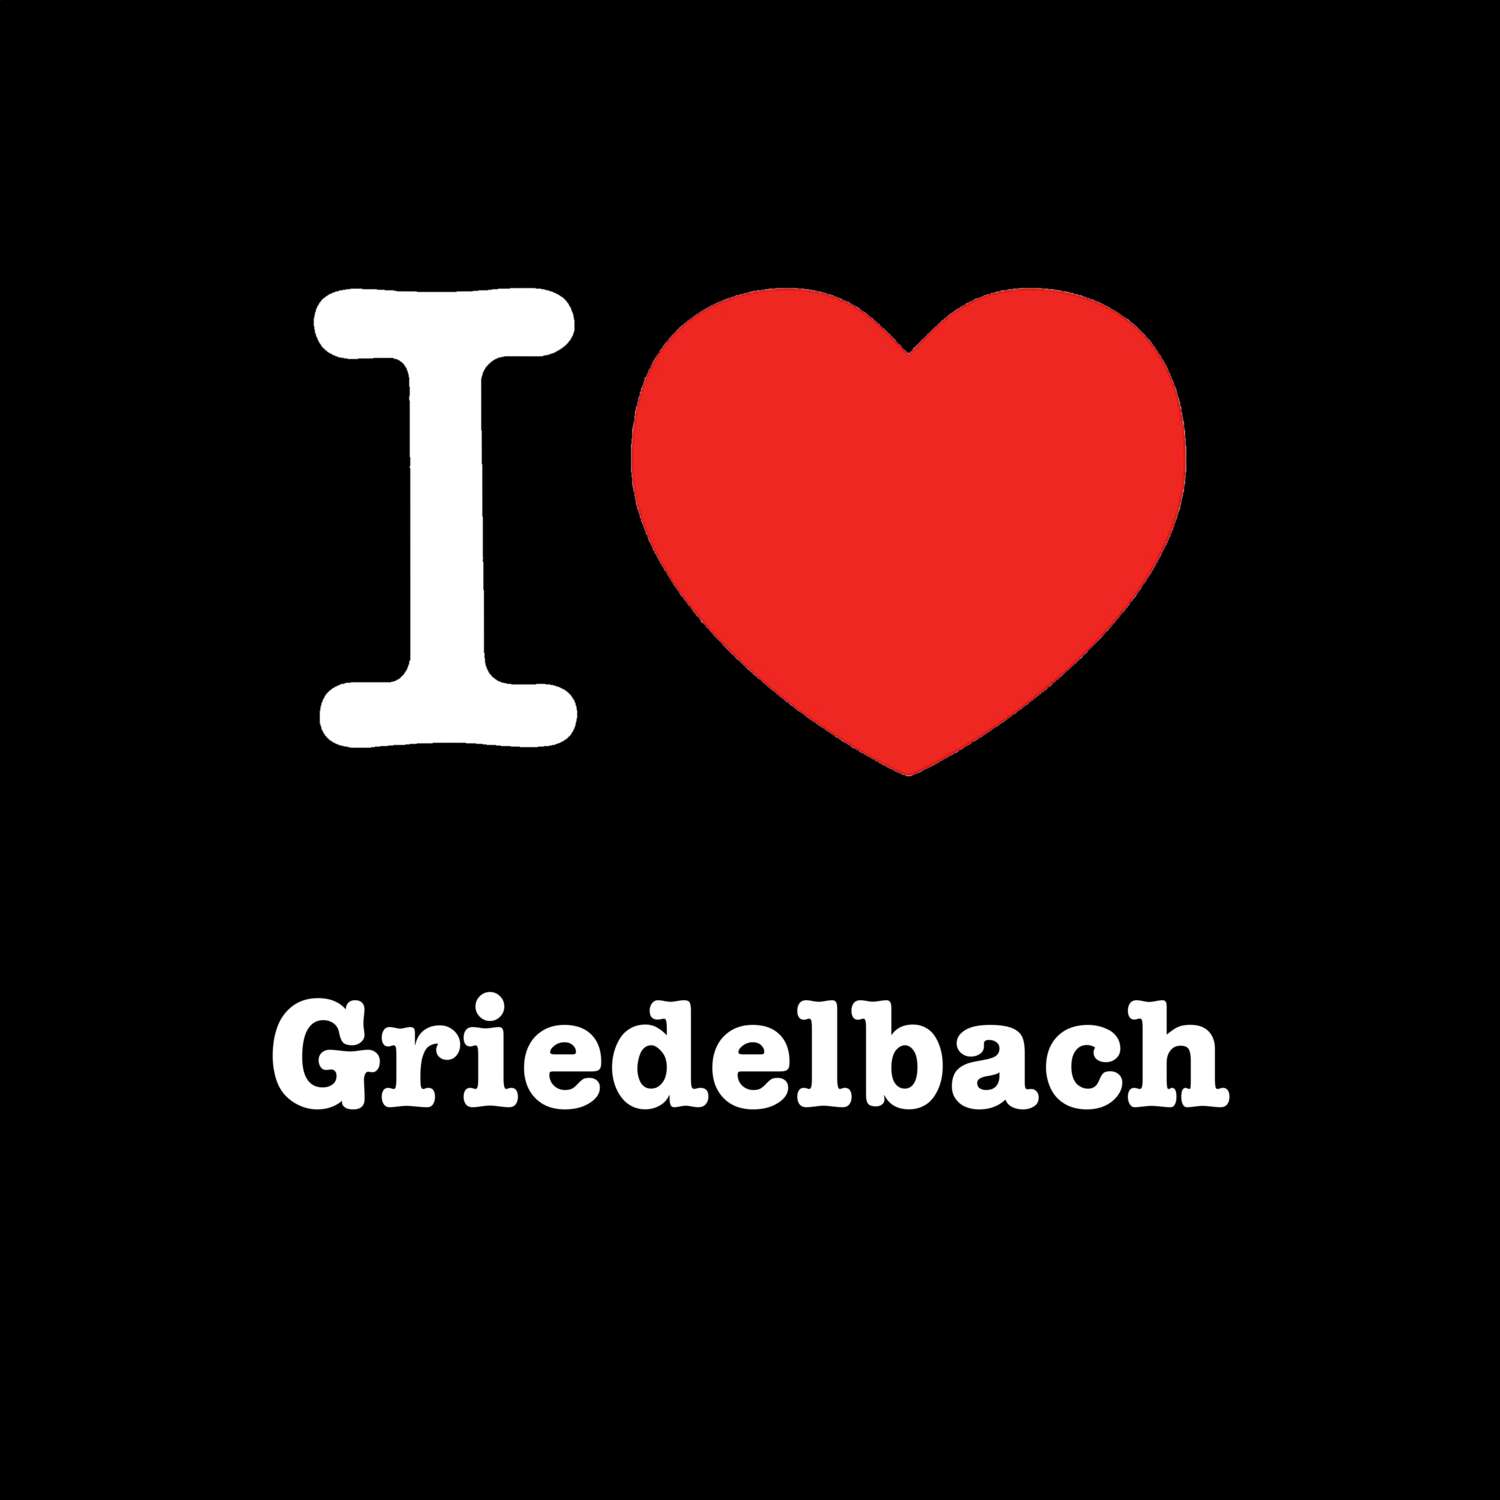 Griedelbach T-Shirt »I love«